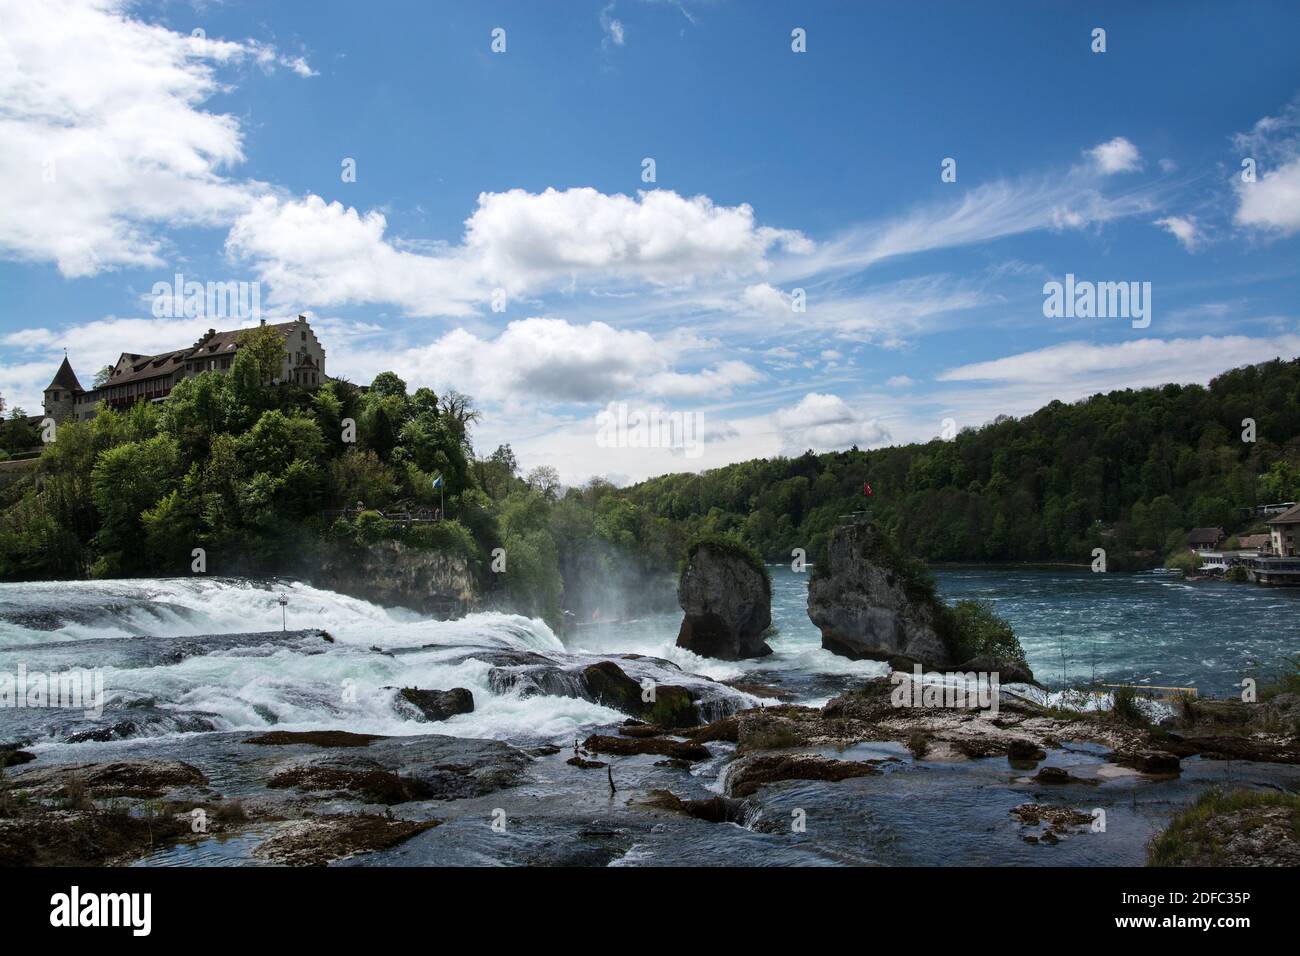 Das Schloss liegt am linken Ufer des Rheins auf einem steilen Felsen über dem Rheinfall und bietet einen Ausblick über den Rhein und den Wasserfall. Stock Photo